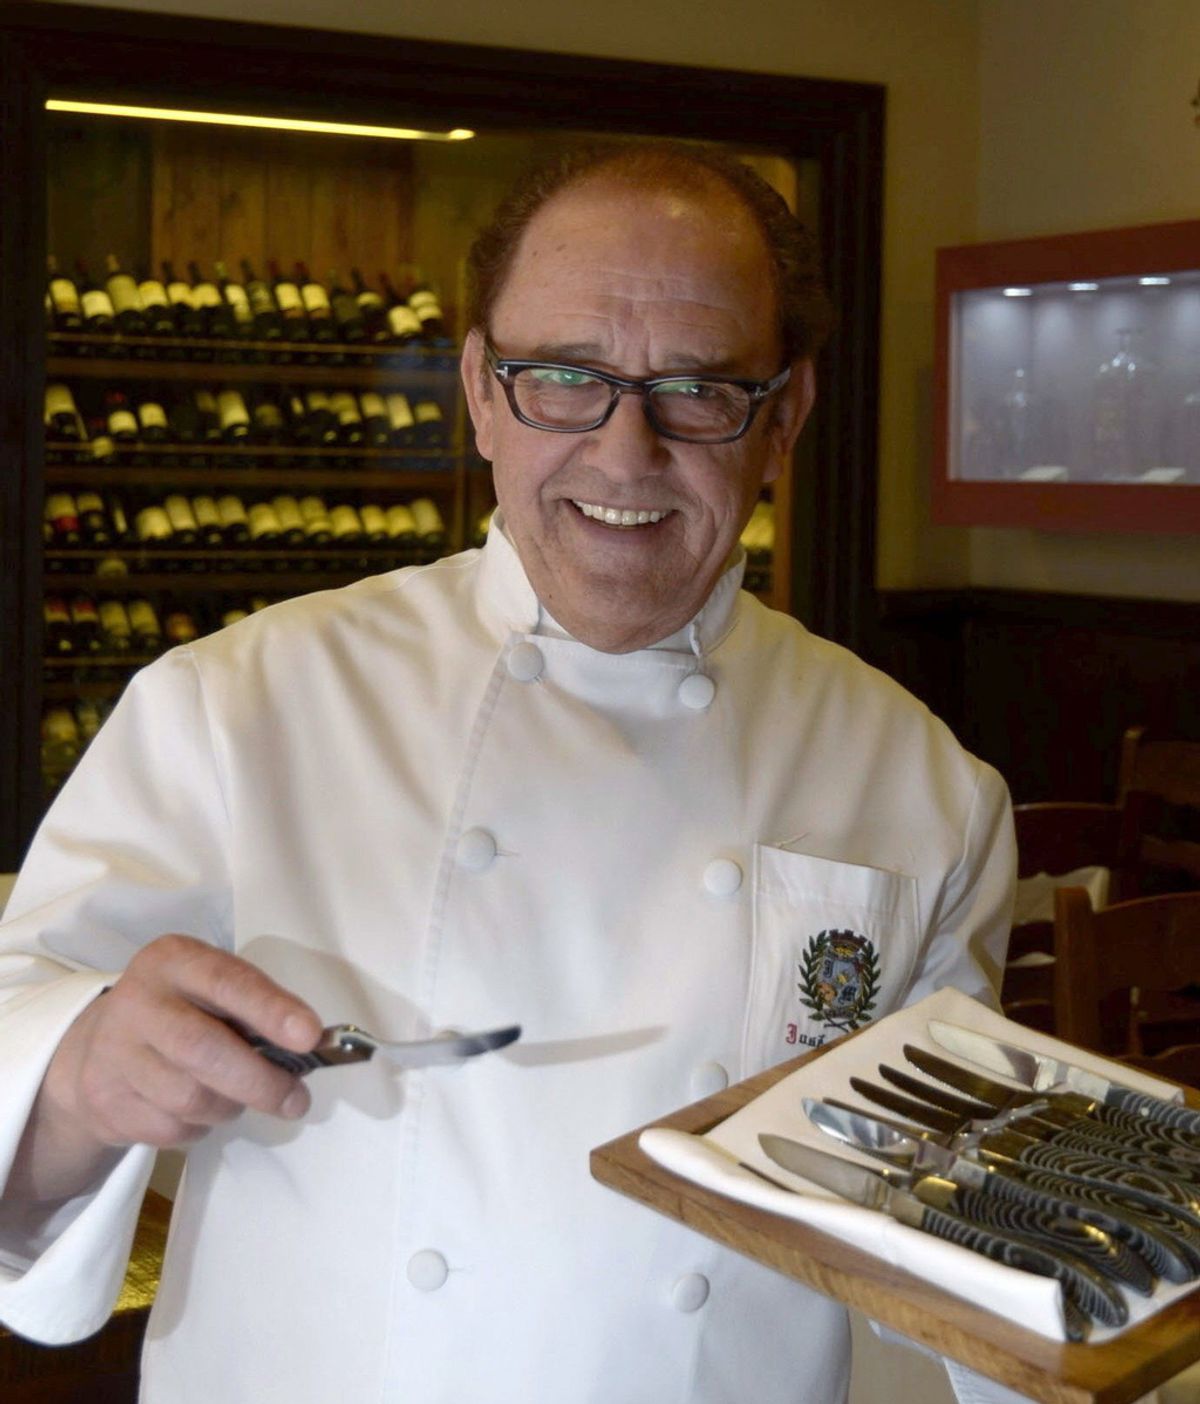 Un hostelero de Segovia patenta un cuchillo para degustar el cochinillo